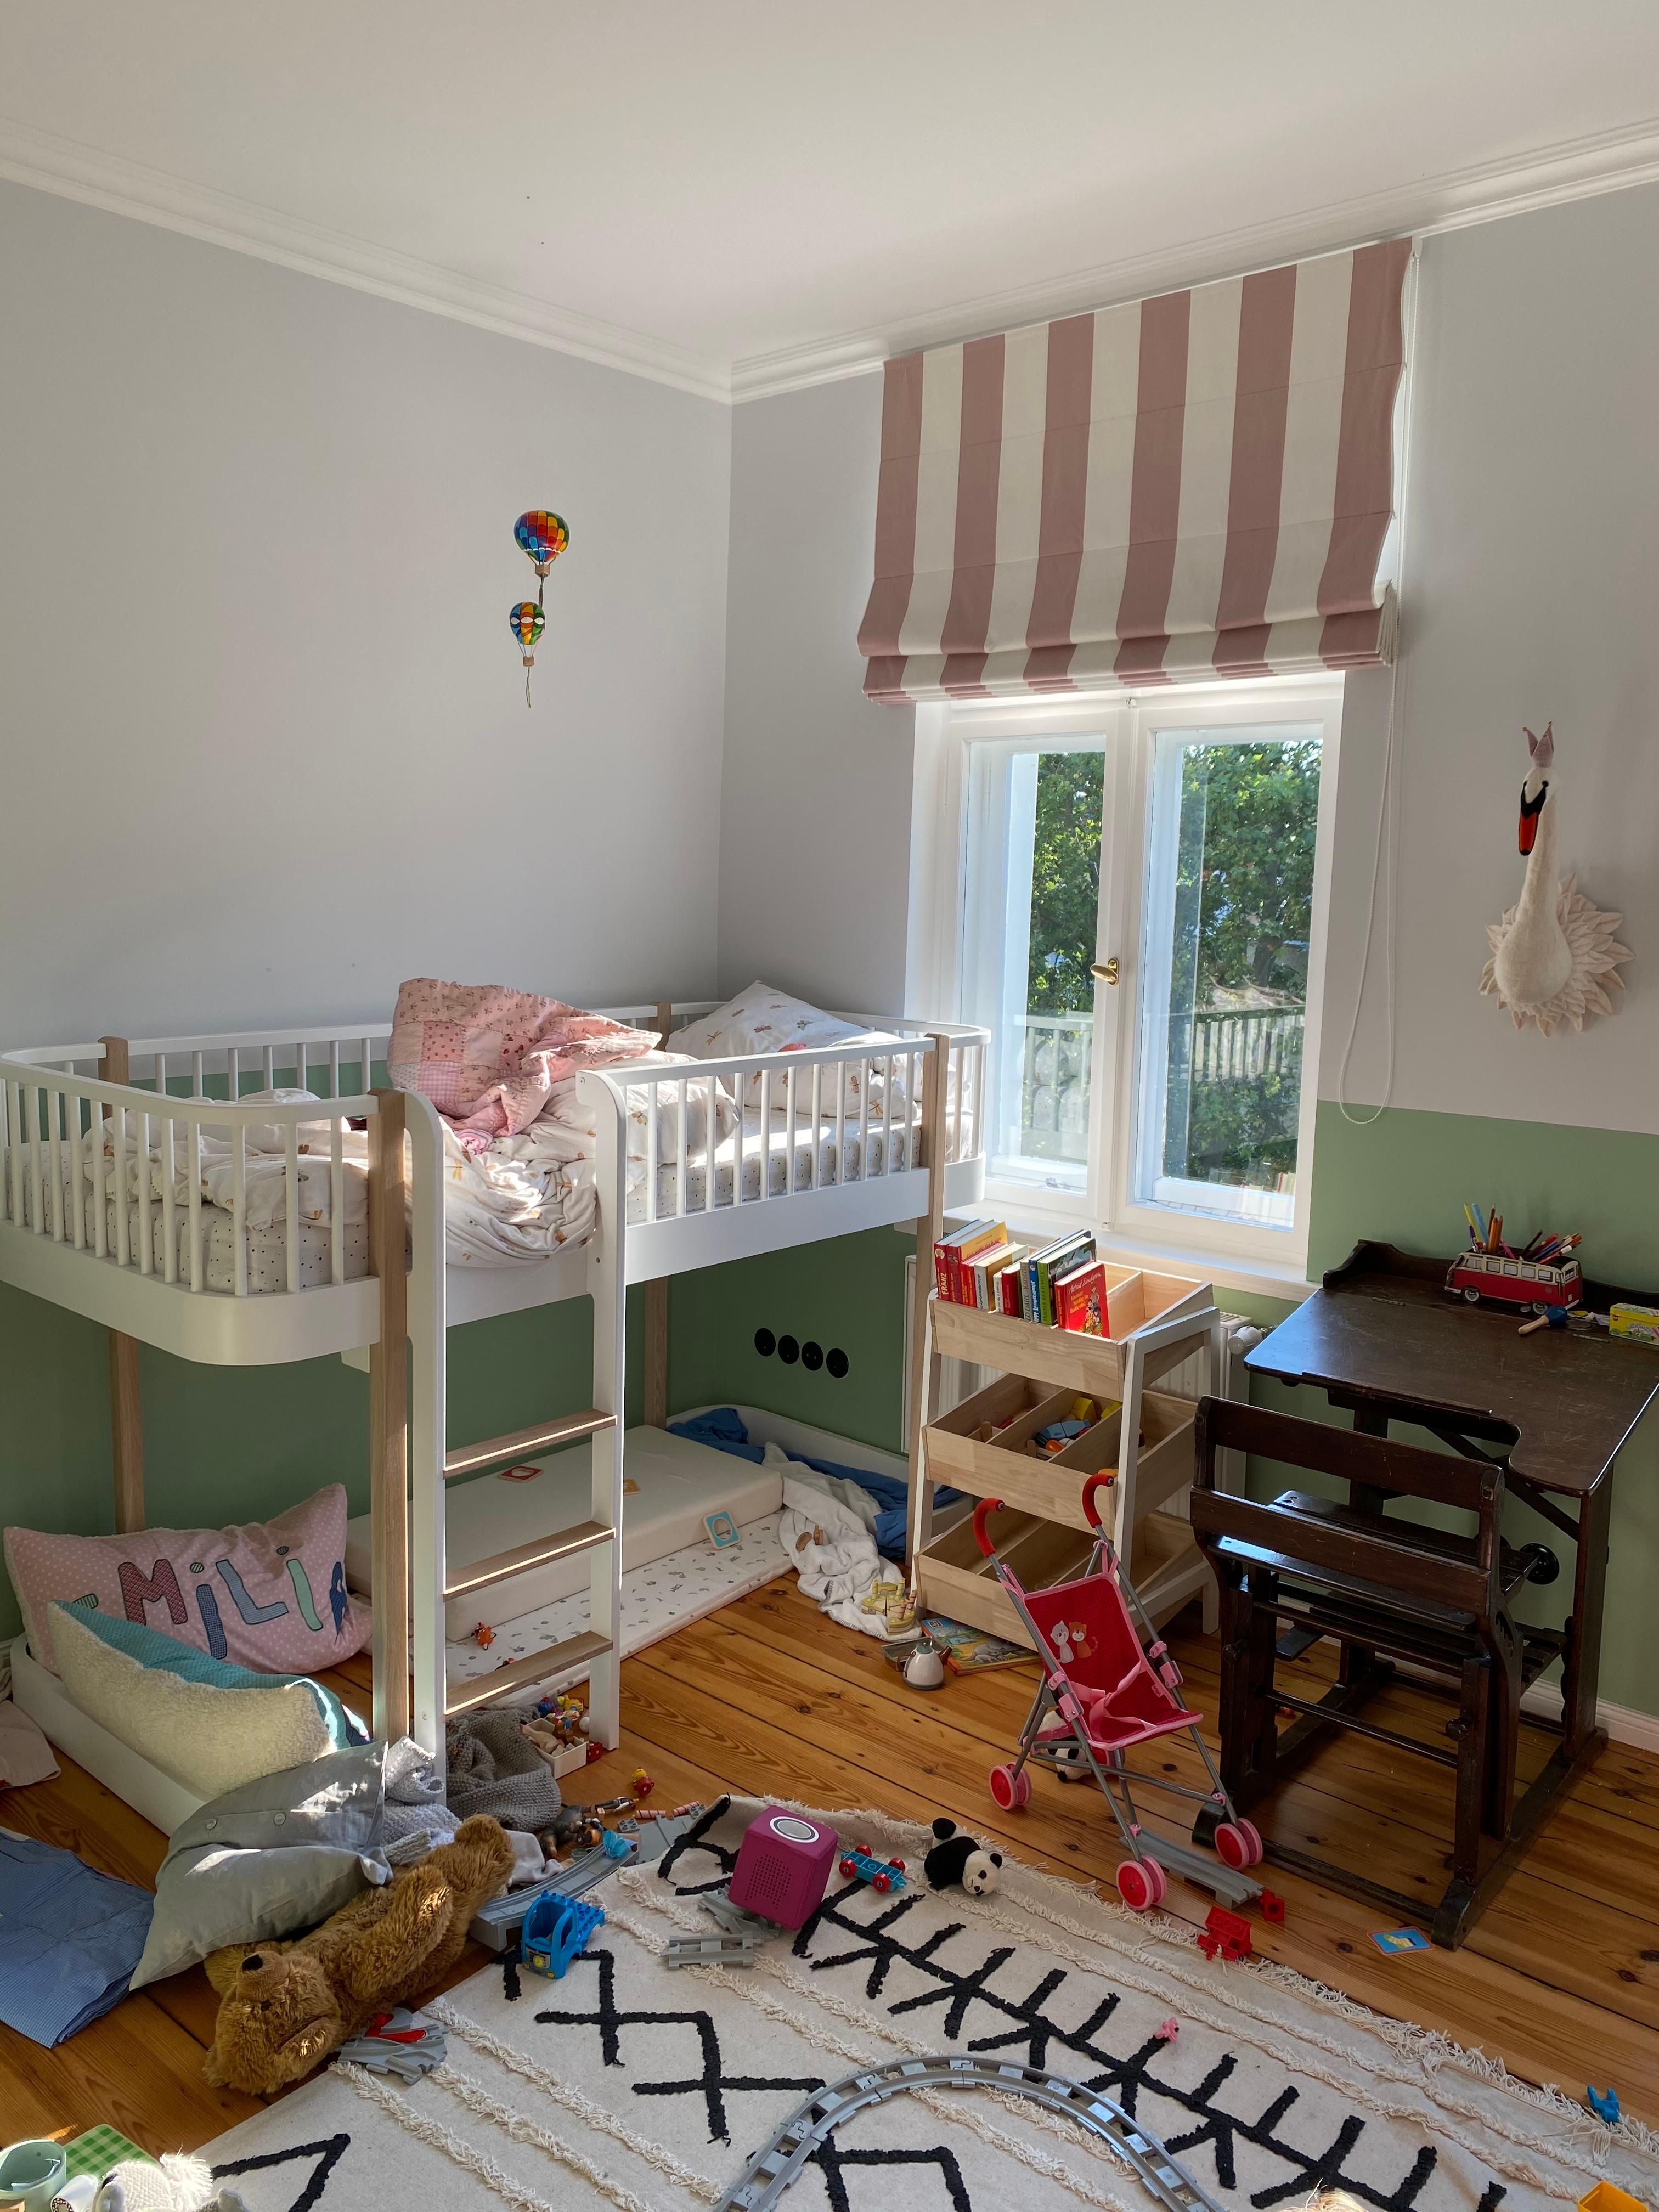 Kinderzimmer - noch etwas chaotisch aber bald gibt es hier noch mal ein Update #kinderzimmer #hochbett